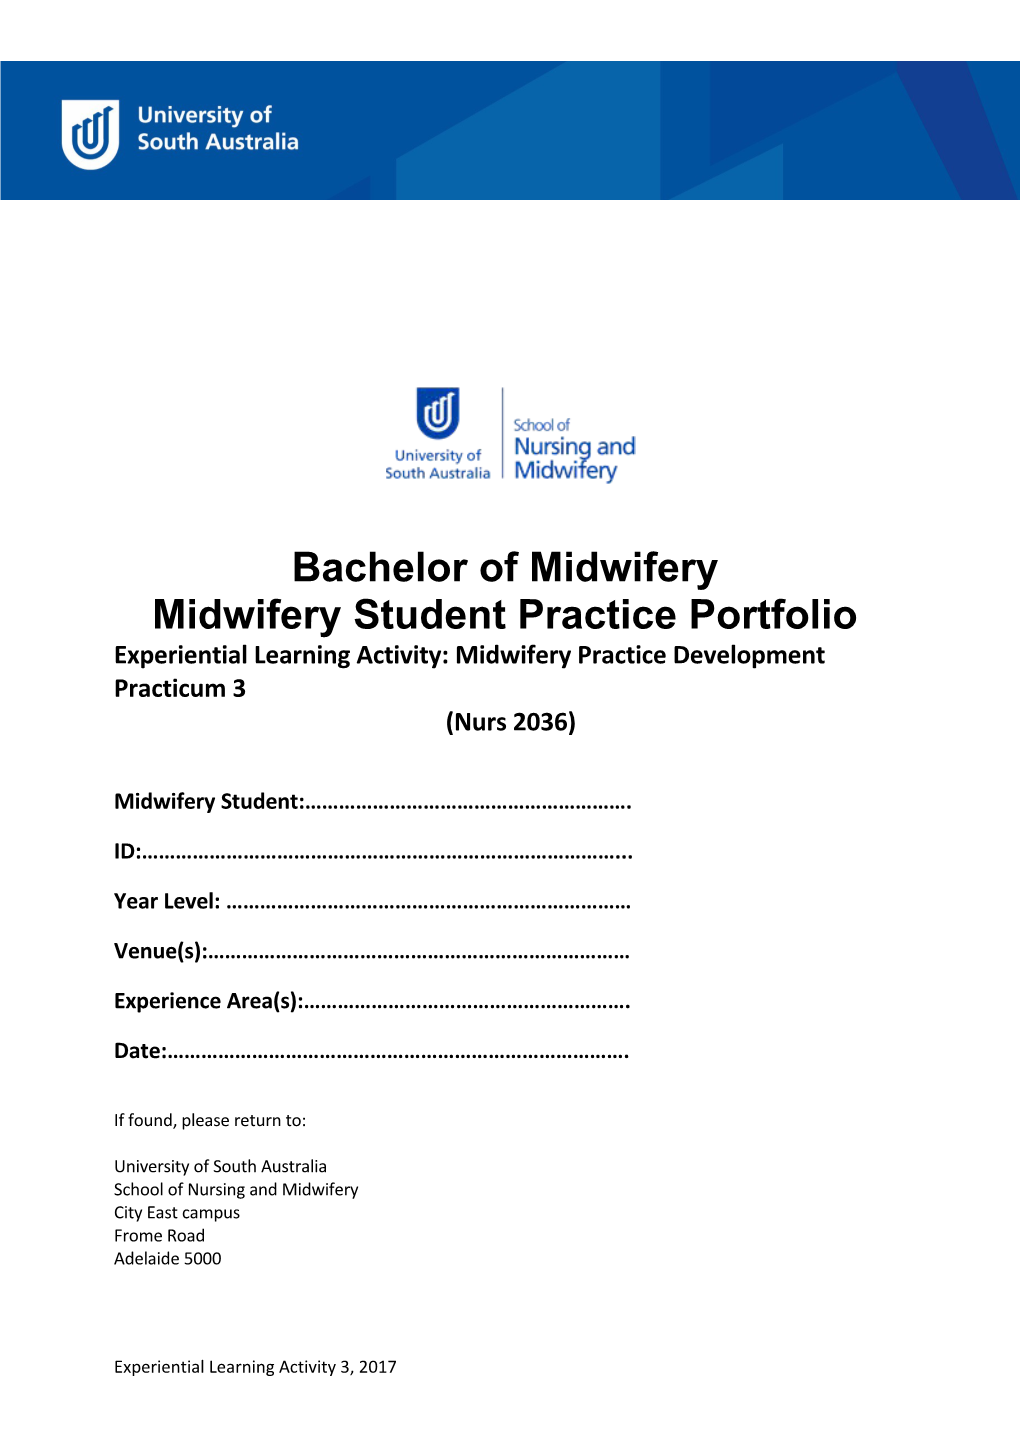 Midwifery Student Practice Portfolio